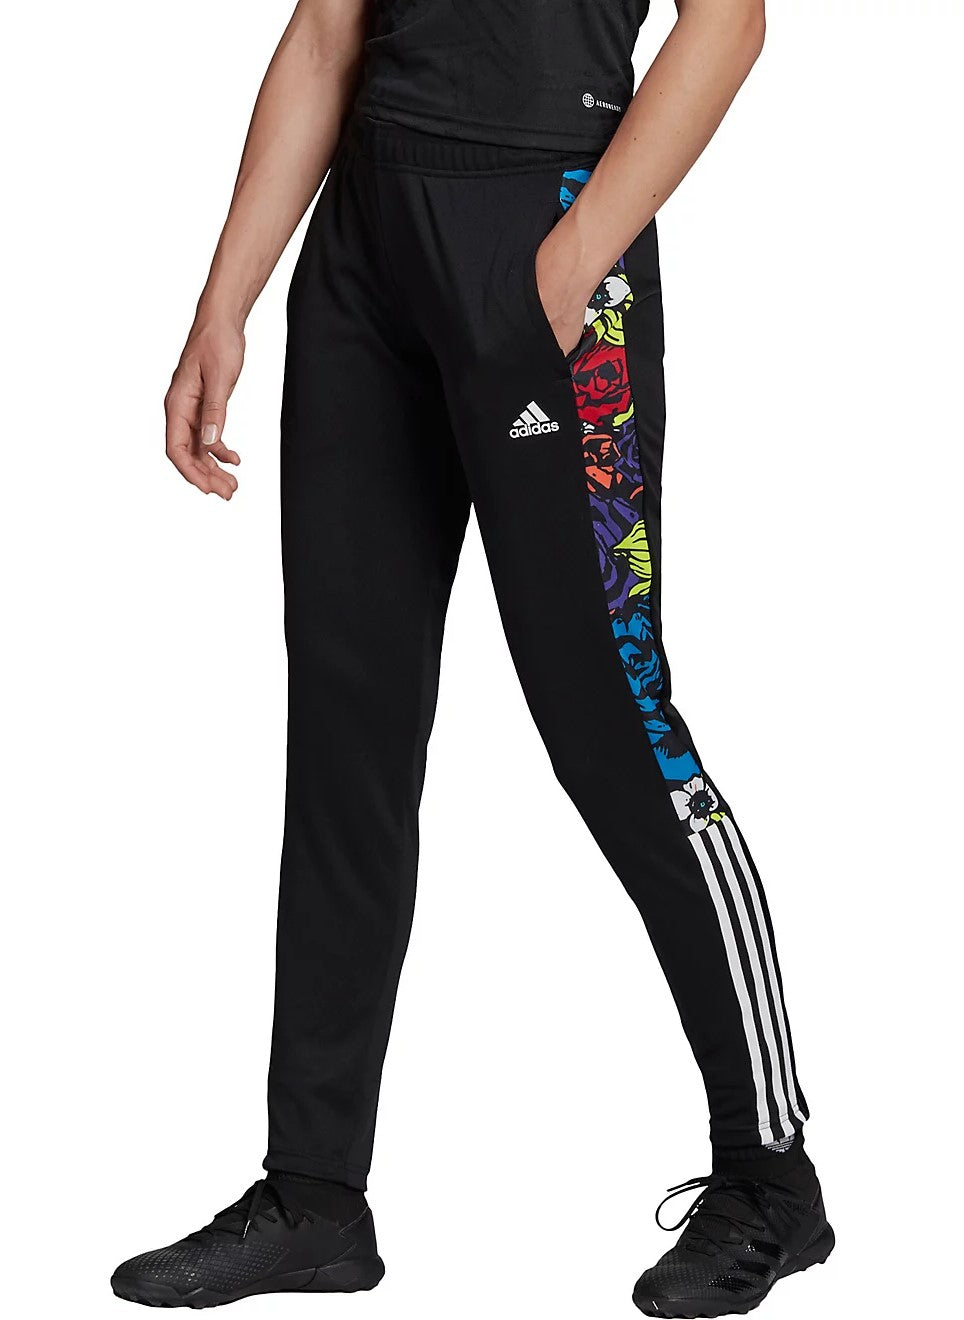 adidas Women's Tiro Flower Soccer Track Pant, Black/Multicolor – Fanletic